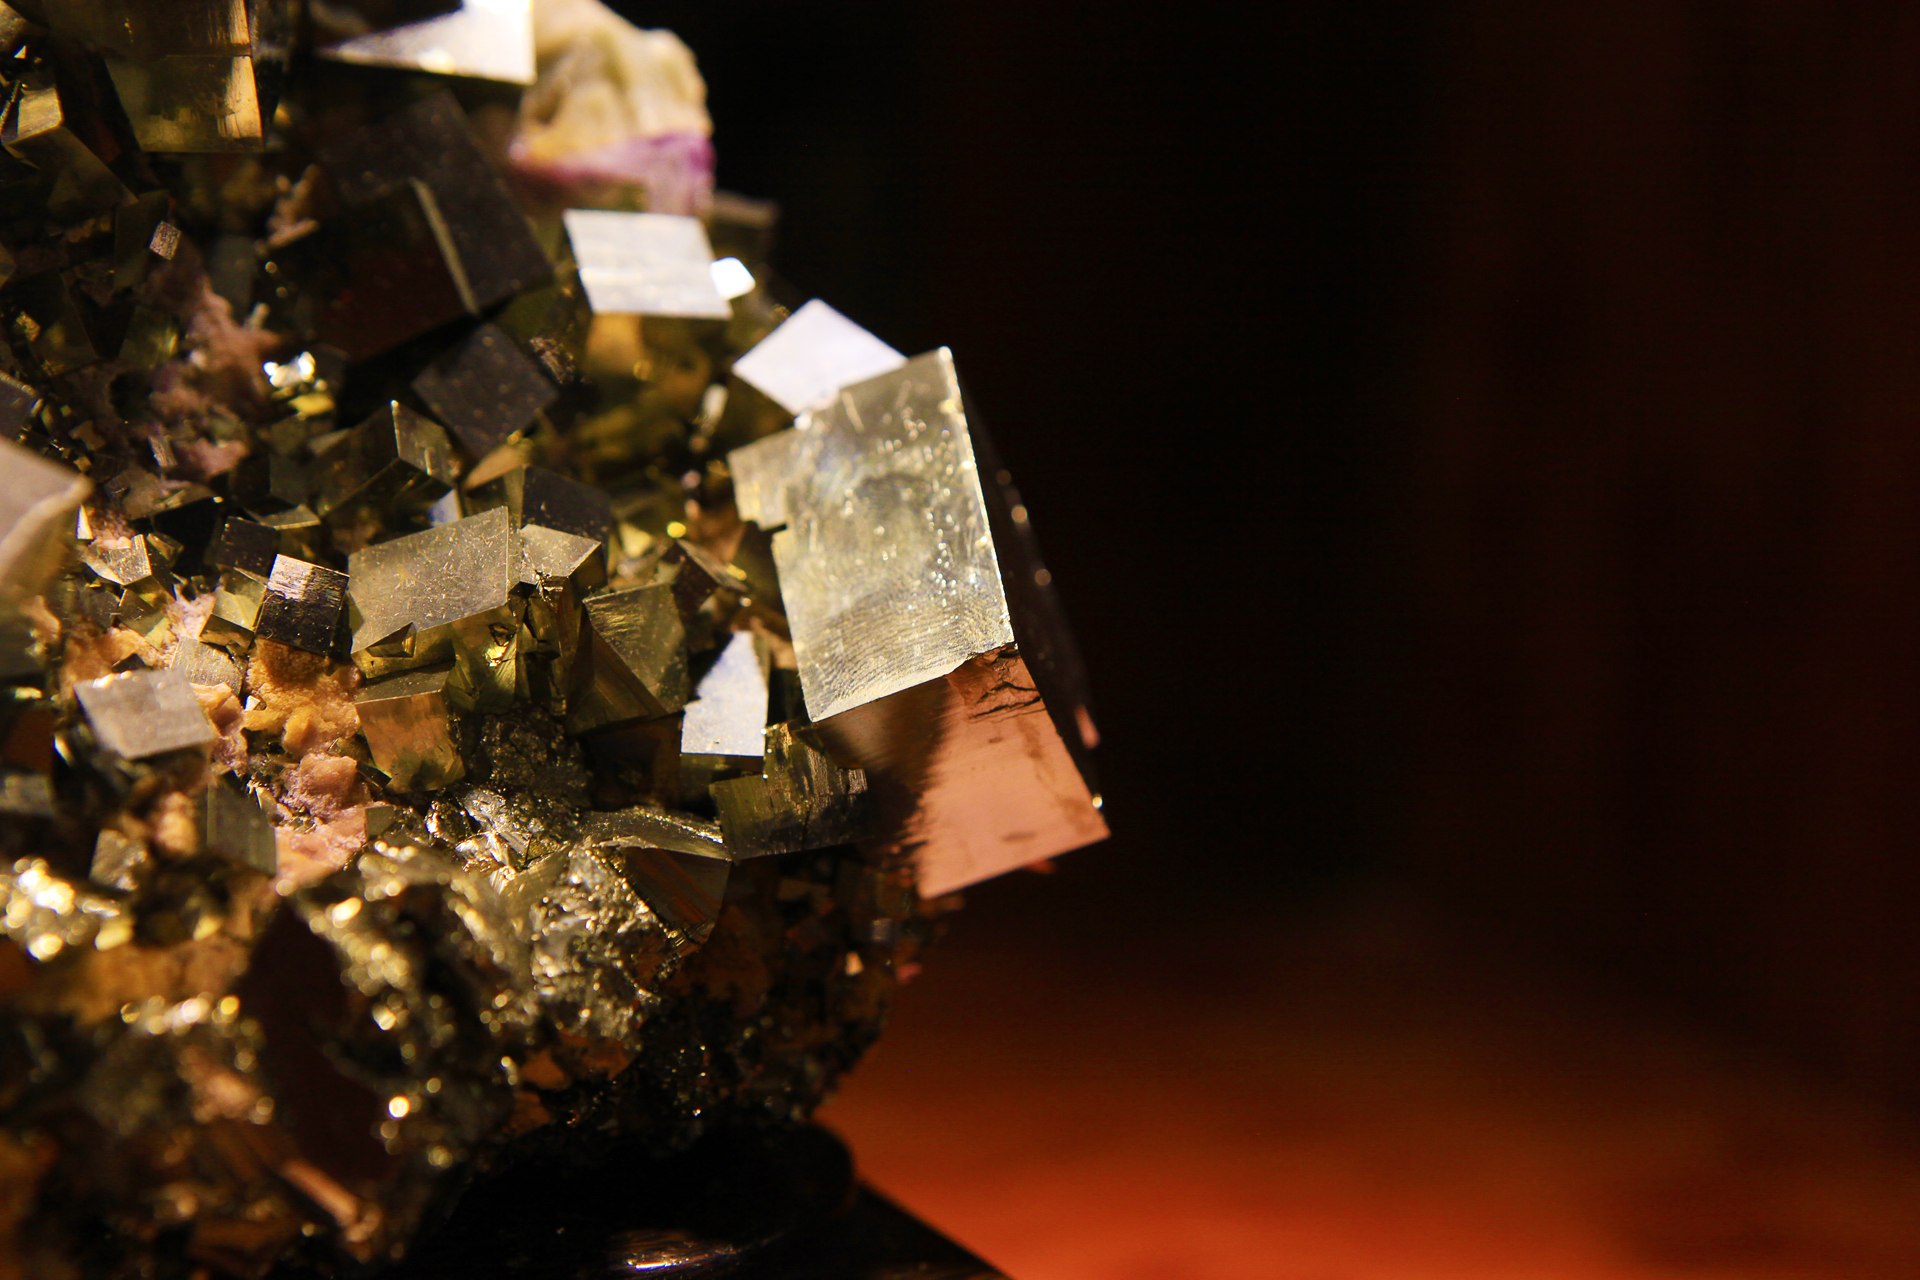 矿物晶体奇石收藏鉴赏之黄铁矿